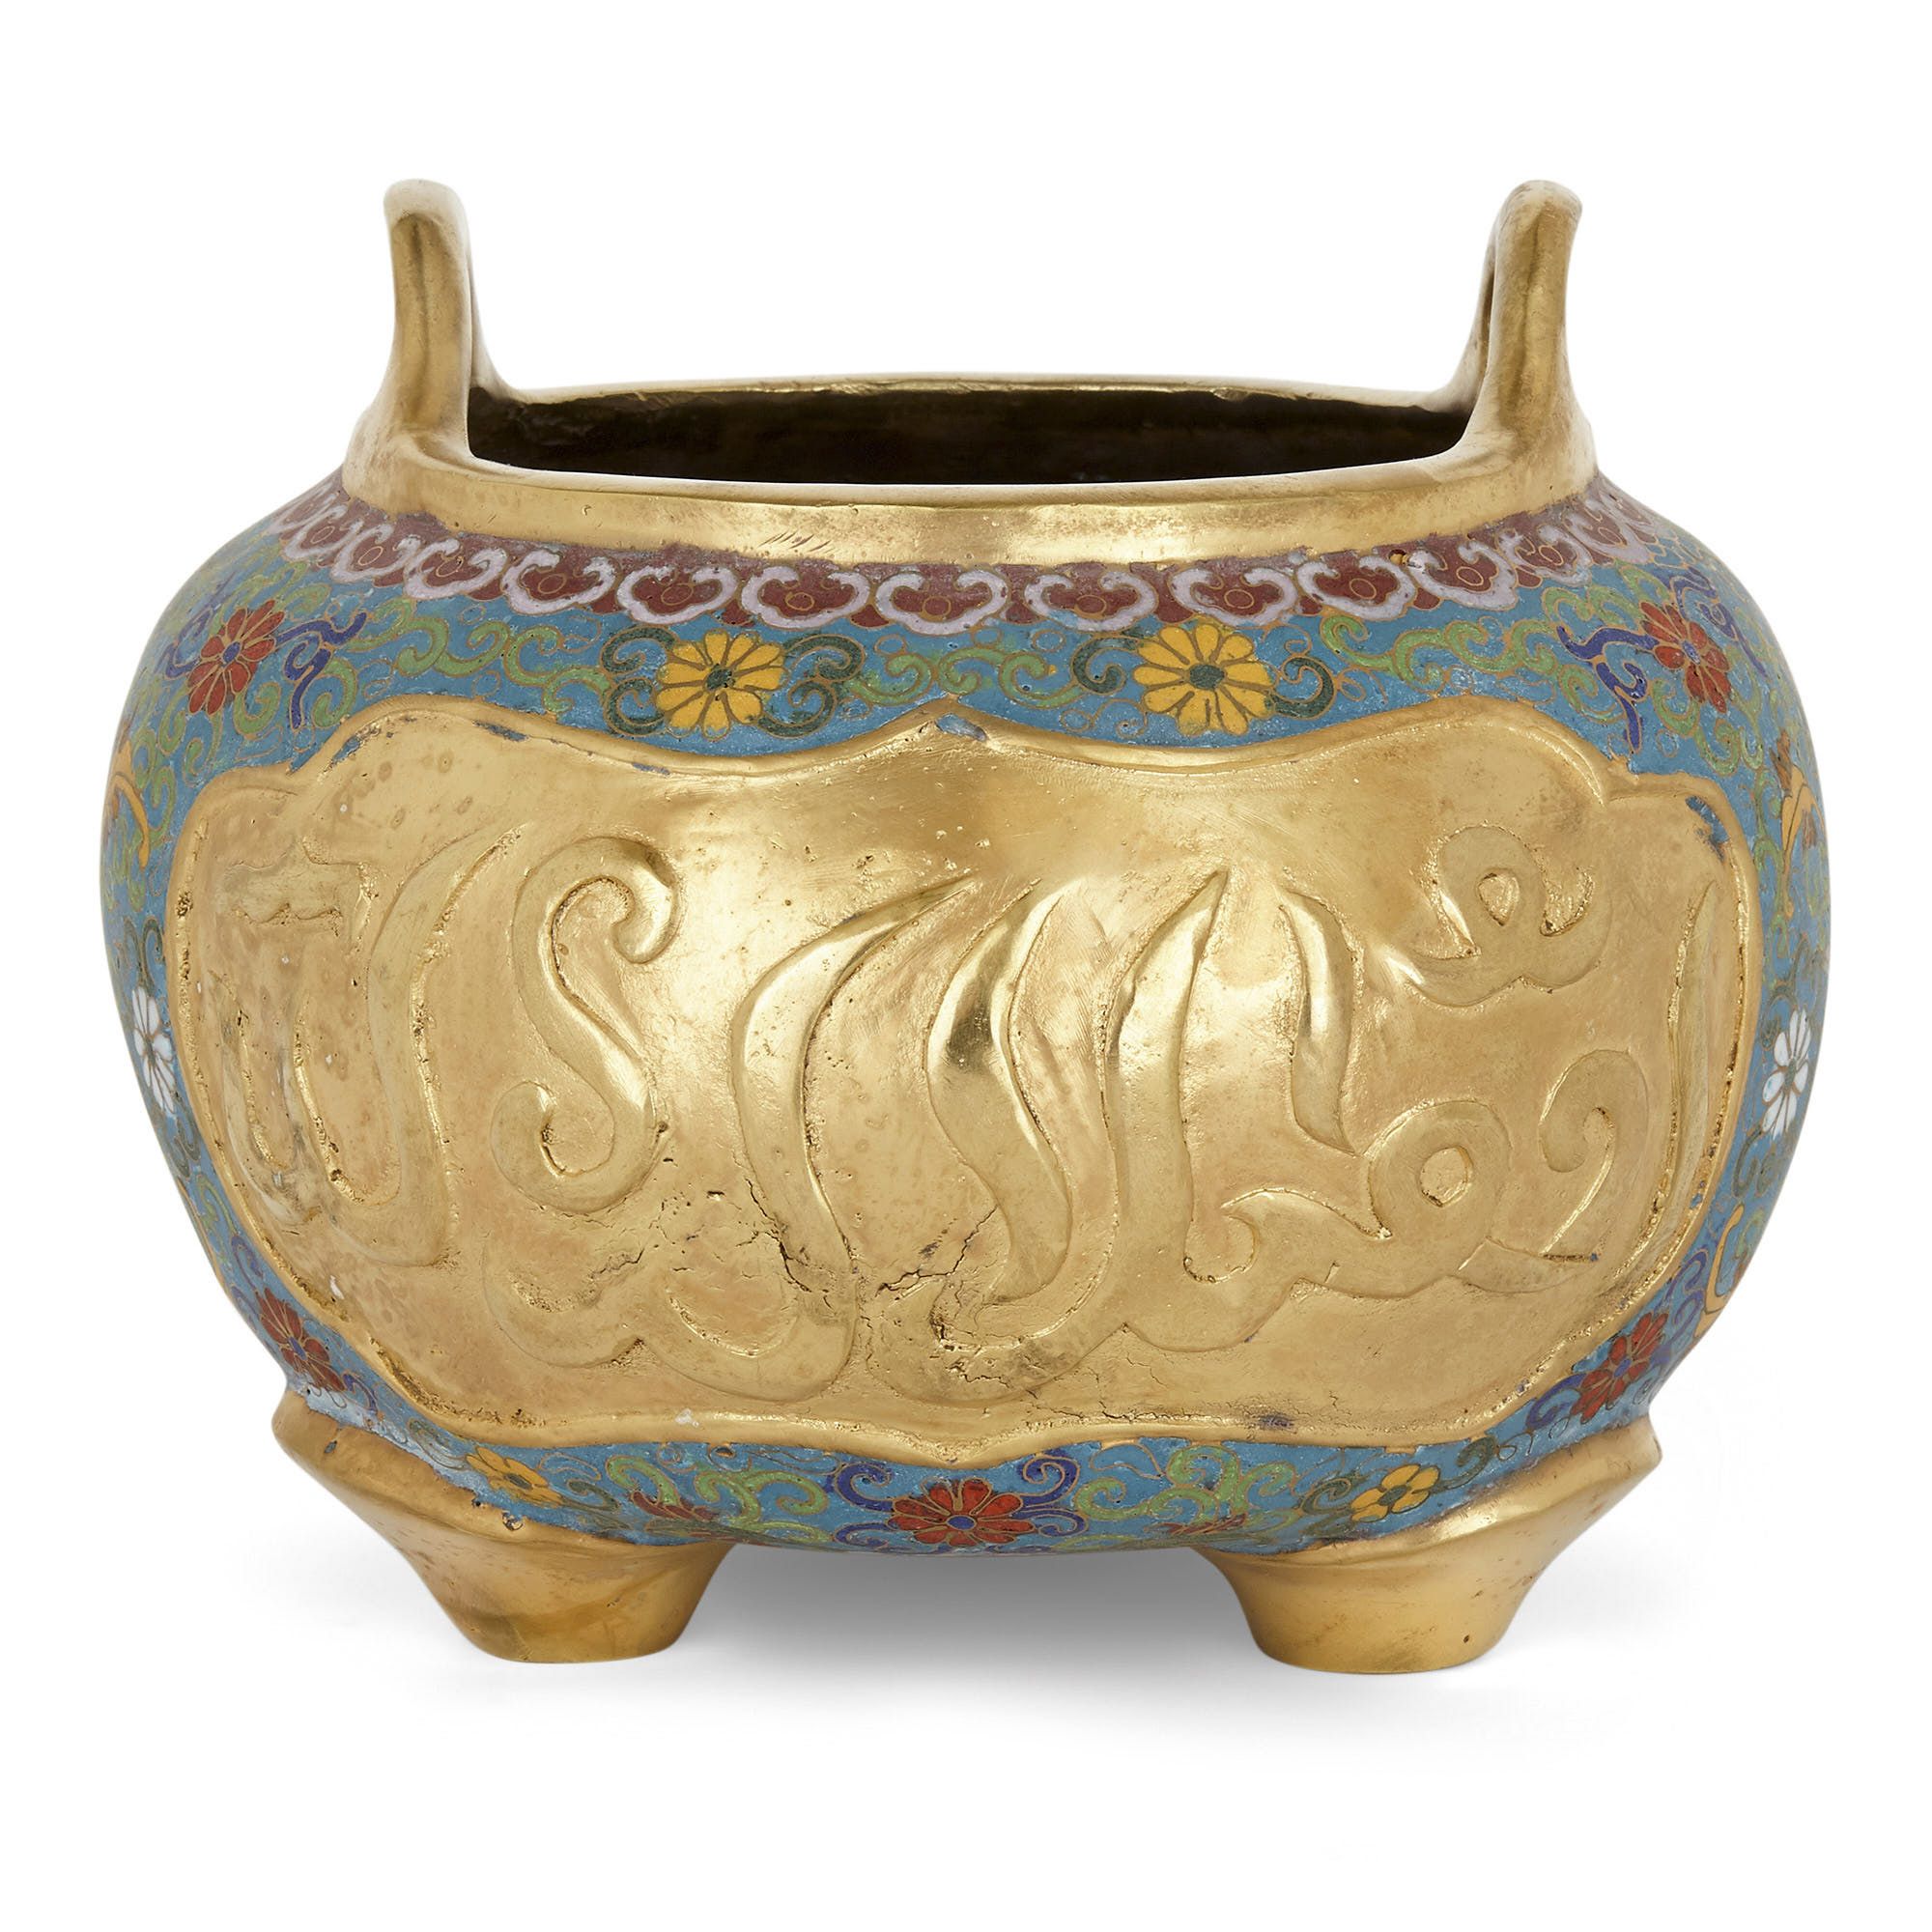 Antique cloisonné enamel Chinese bowl with Arabic inscriptions